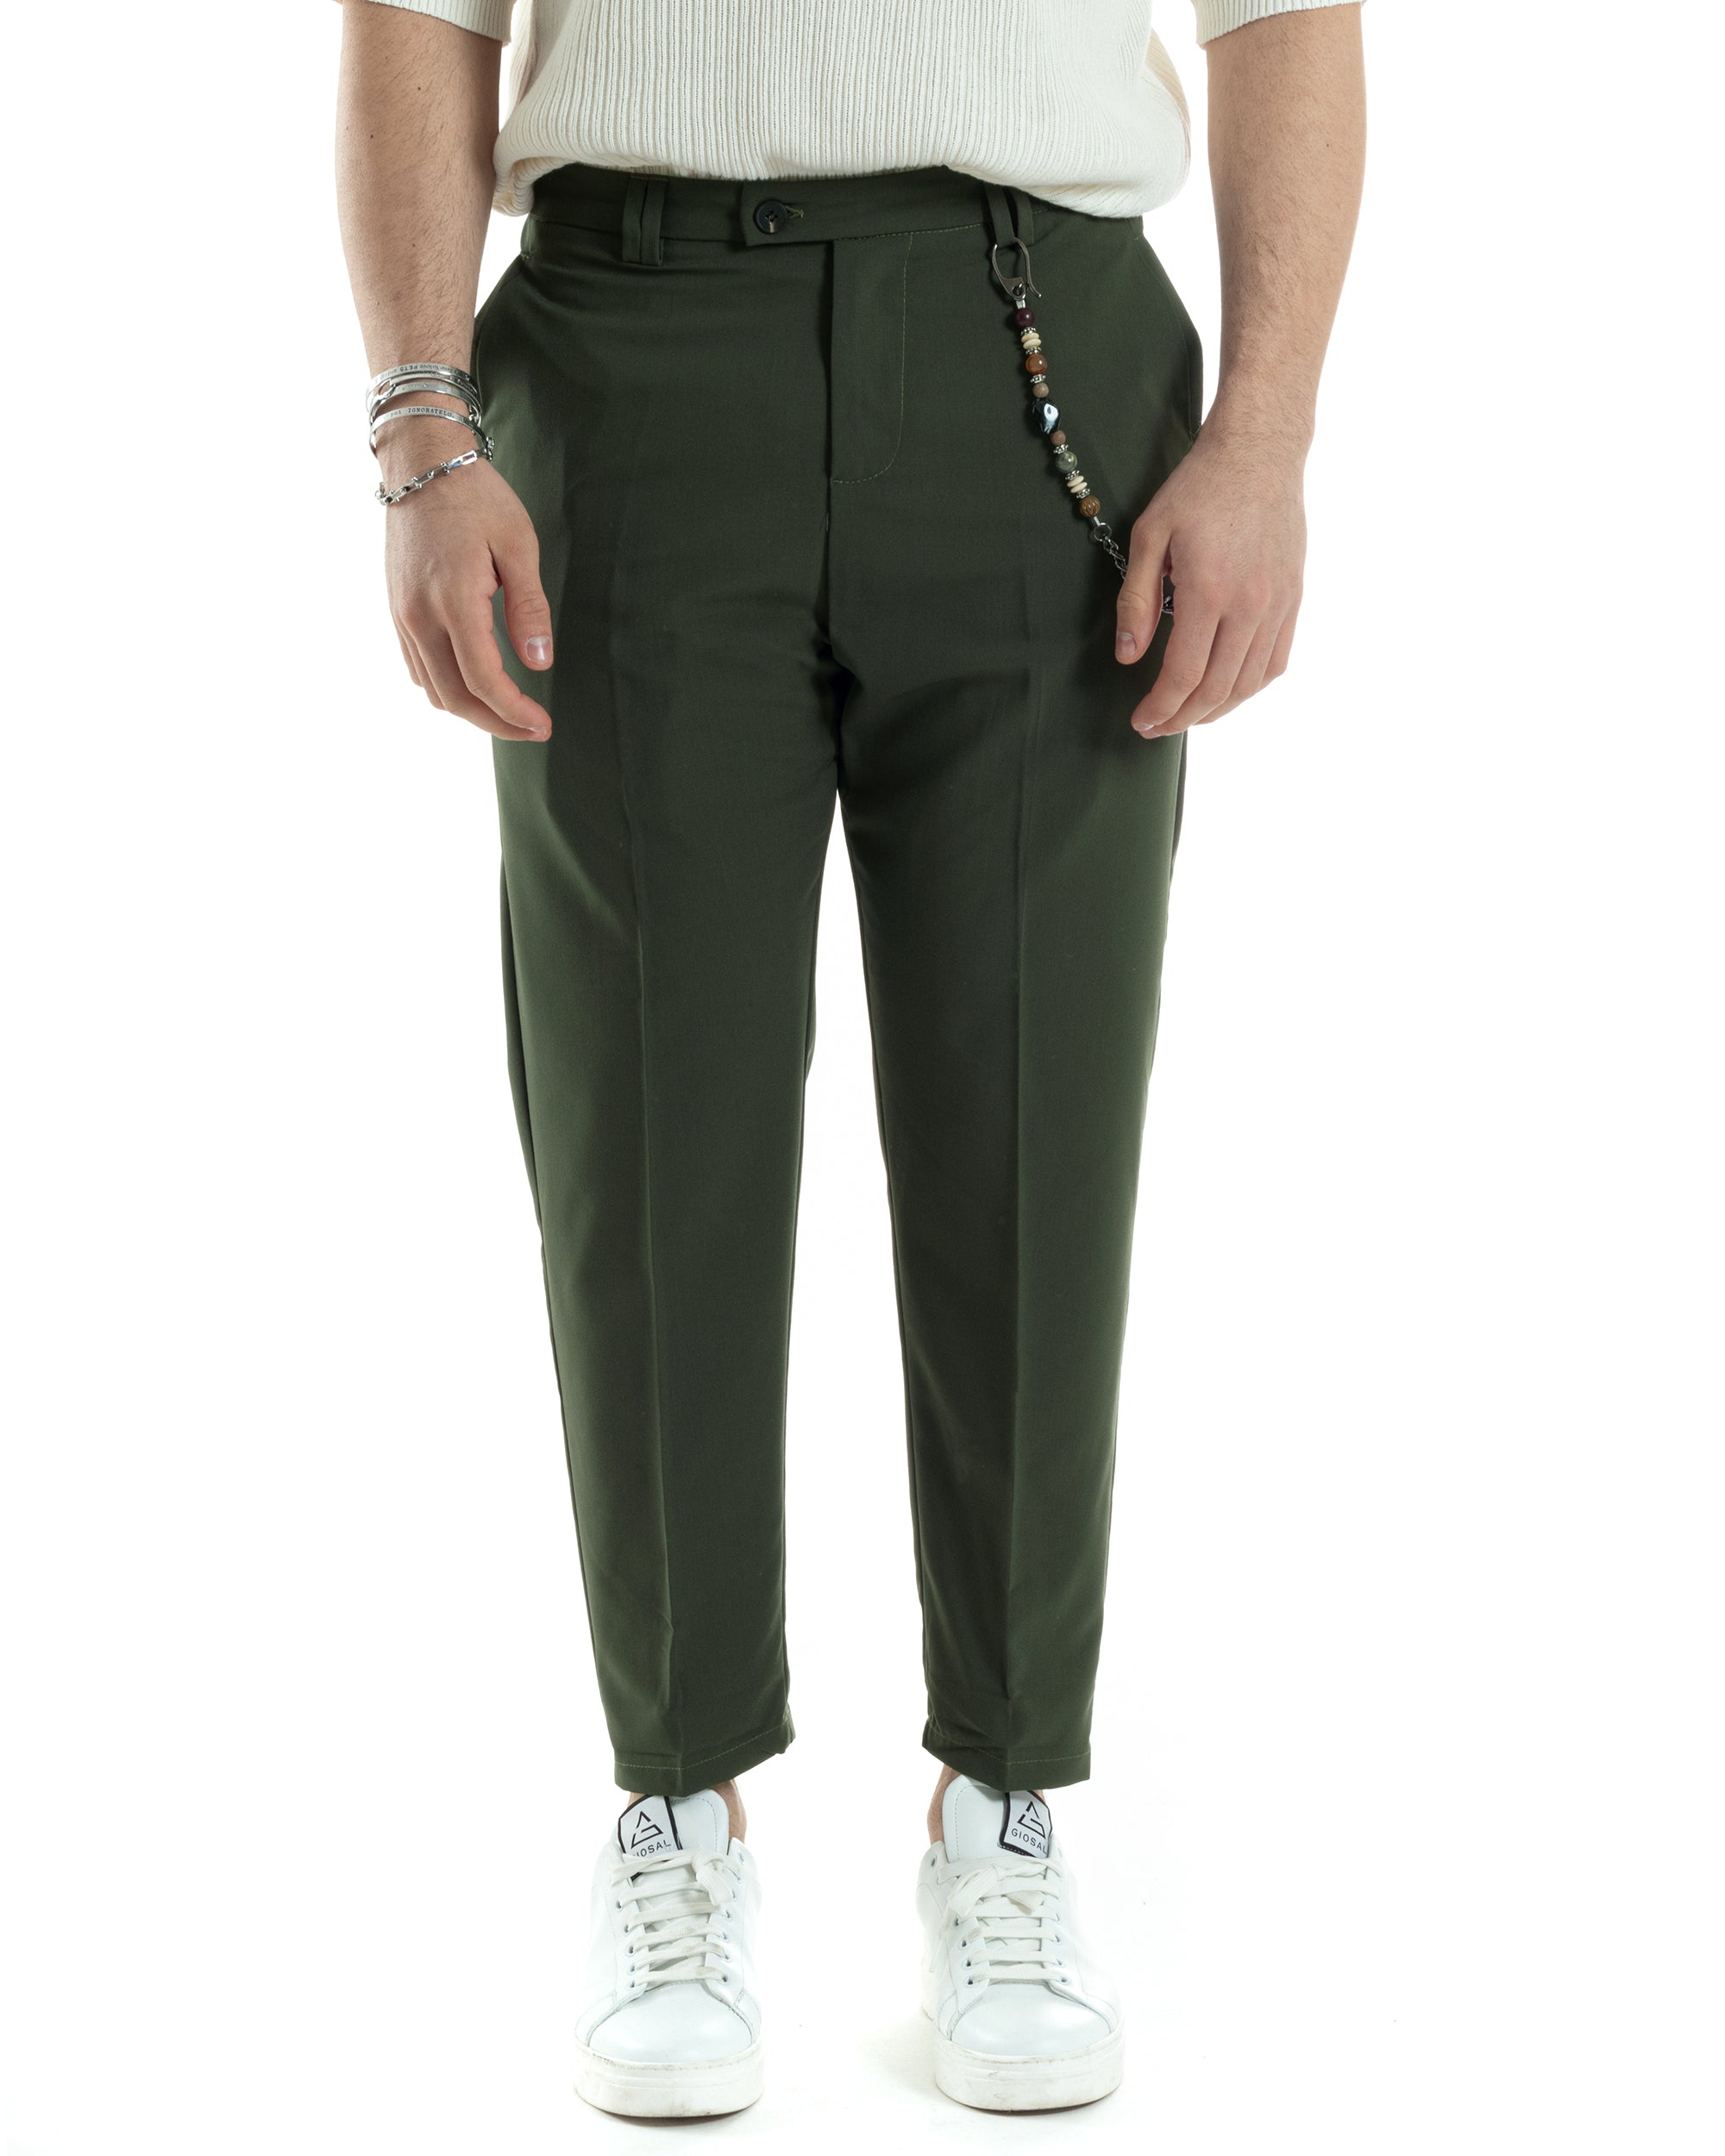 Pantaloni Uomo Viscosa Tasca America Verde Abbottonatura Allungata Capri Sartoriale GIOSAL-P6065A